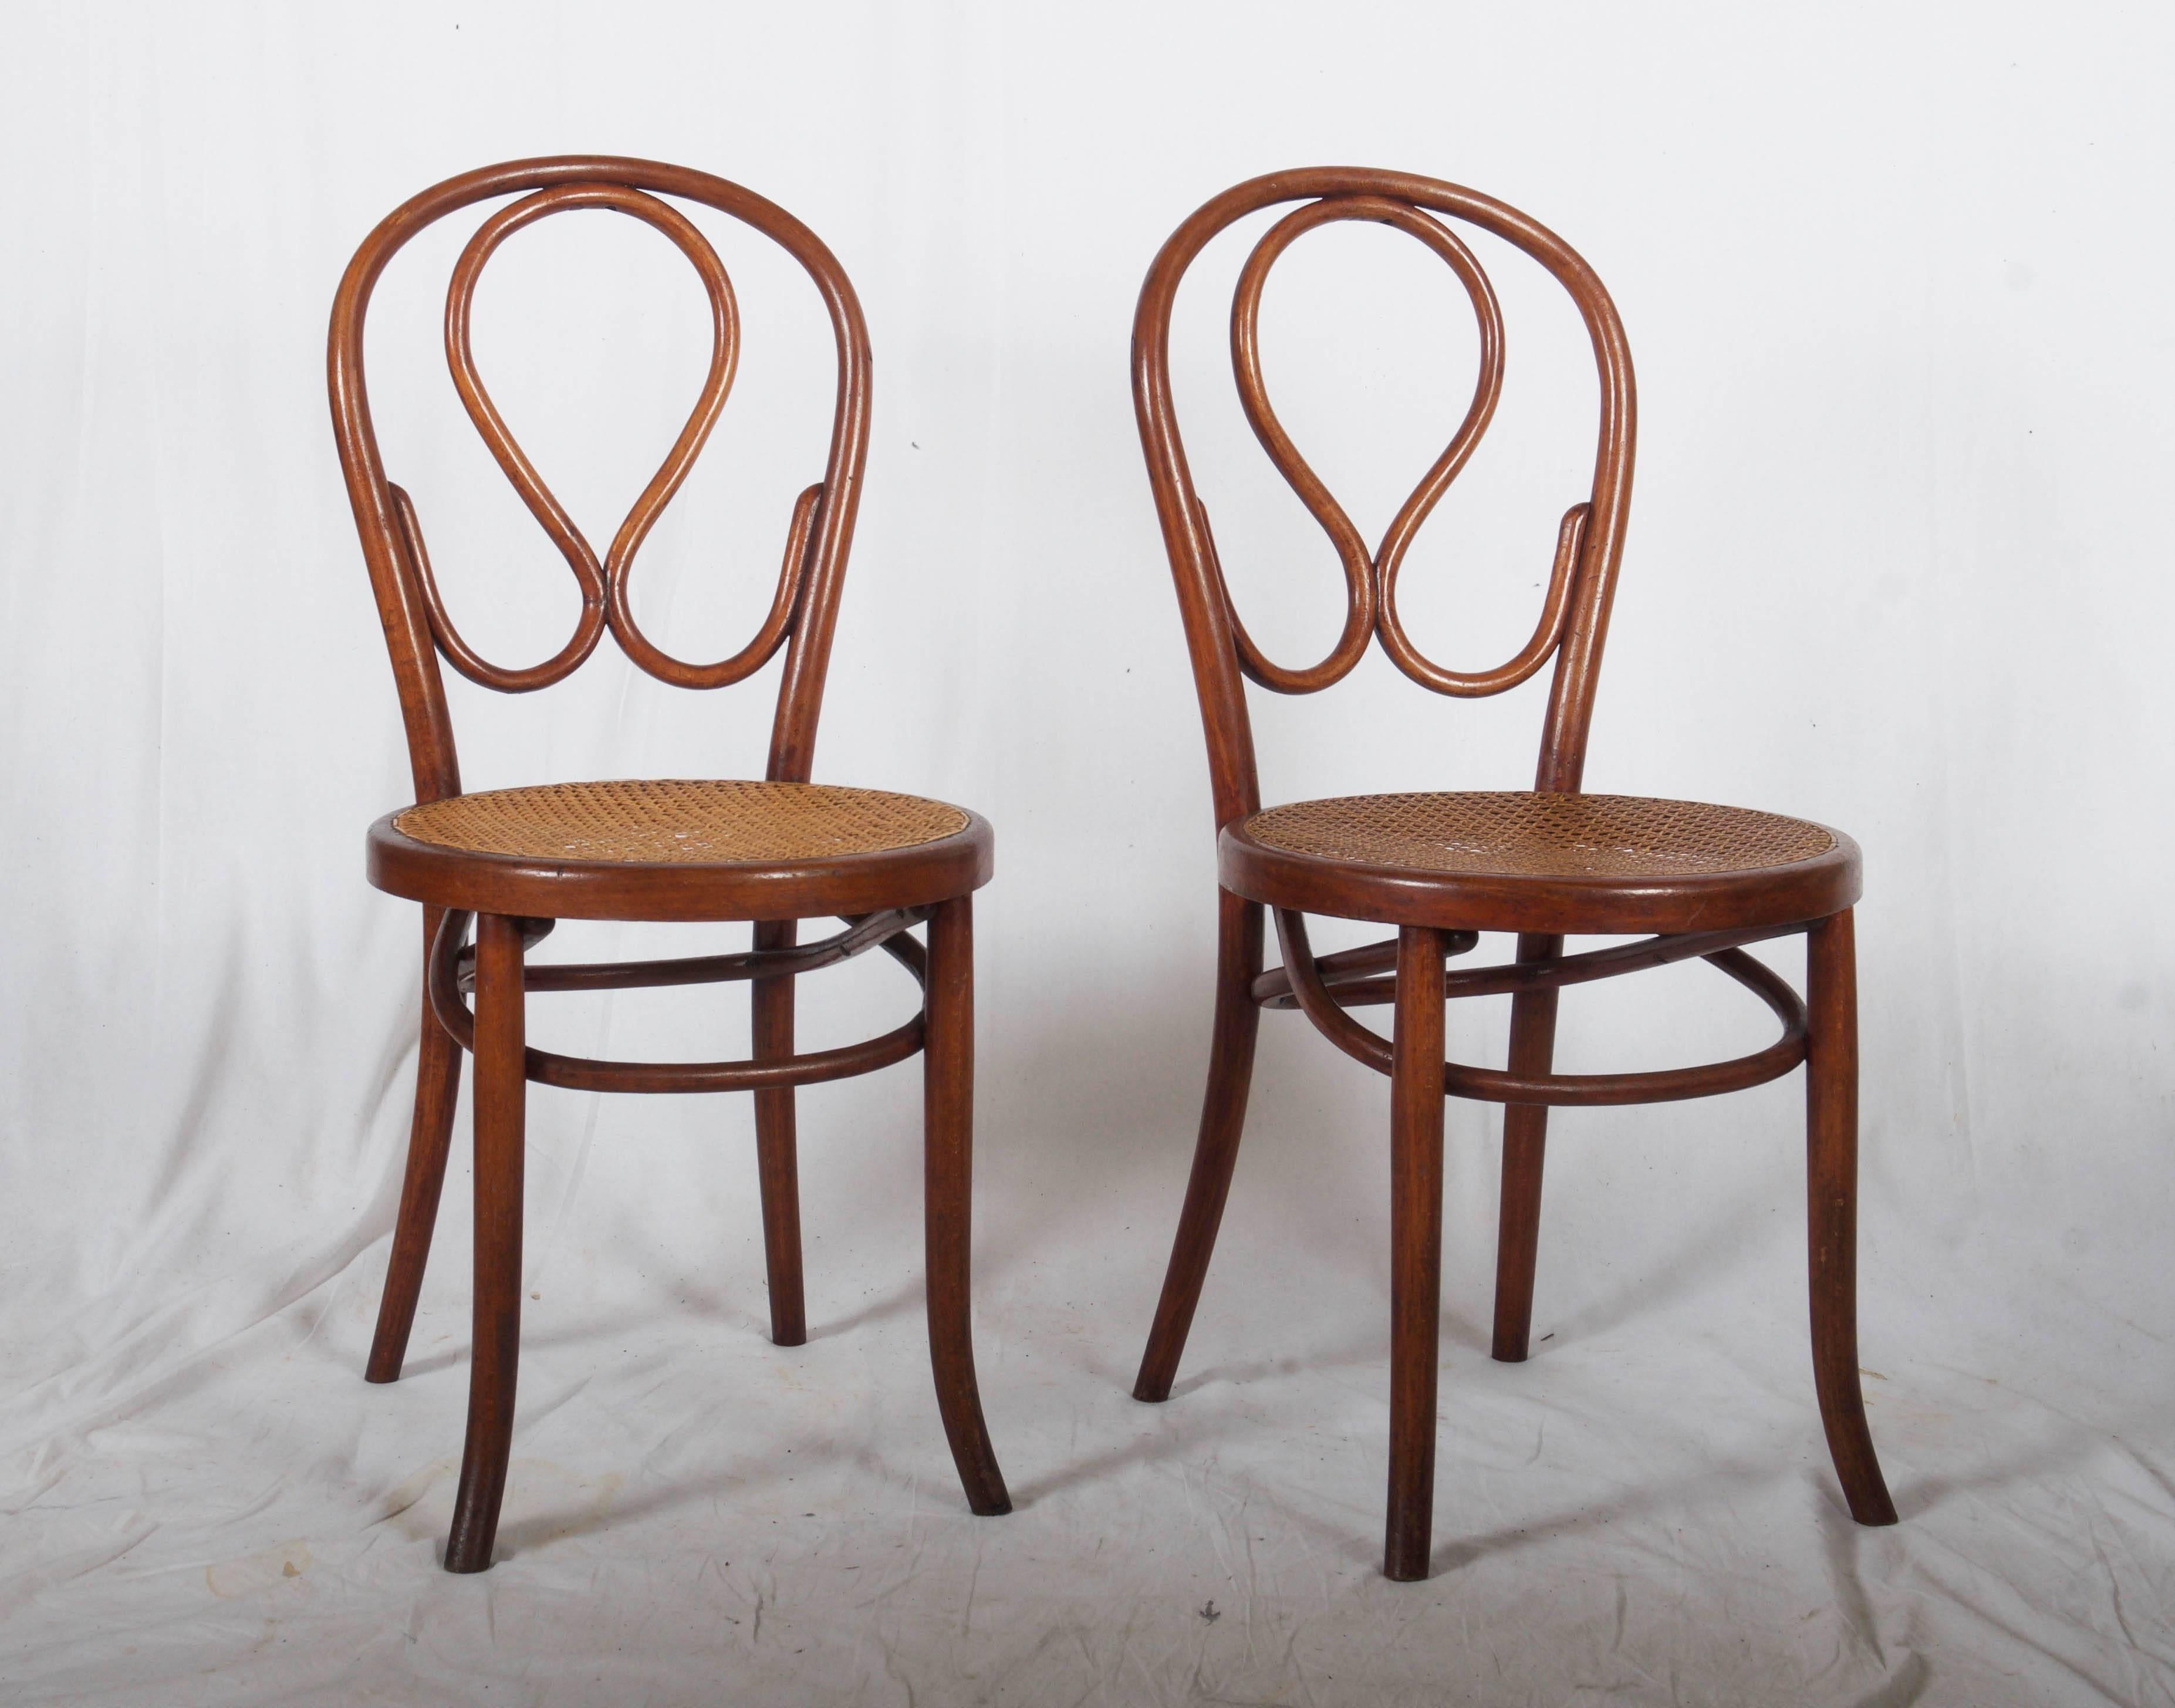 Bugholzstühle wie Thonet Nr. 20. Alle Stühle sind neu konserviert.
Vier Stück verfügbar
Lieferzeit 3-4 Wochen.
 